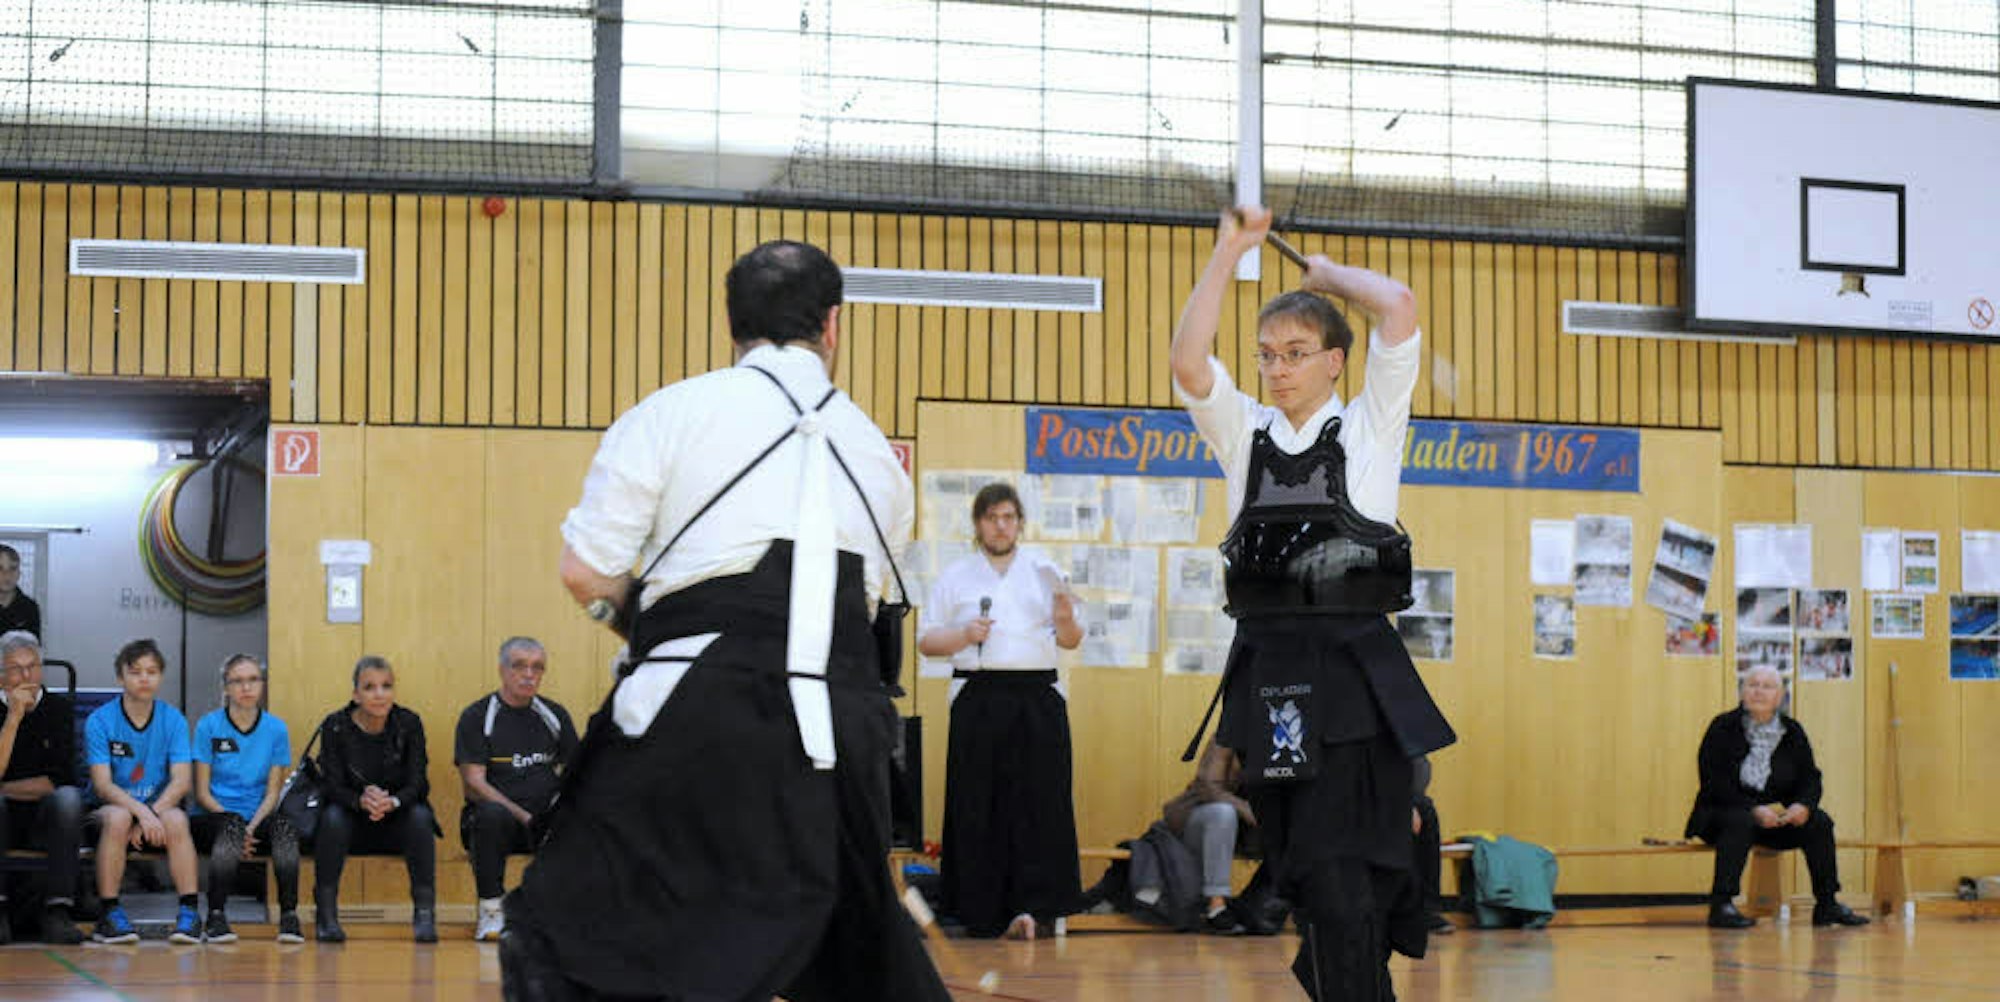 Zwei Mitglieder des Postsportvereins Opladen führten den Zuschauern vor, wie die japanische Kampfsportart Naginata betrieben wird.